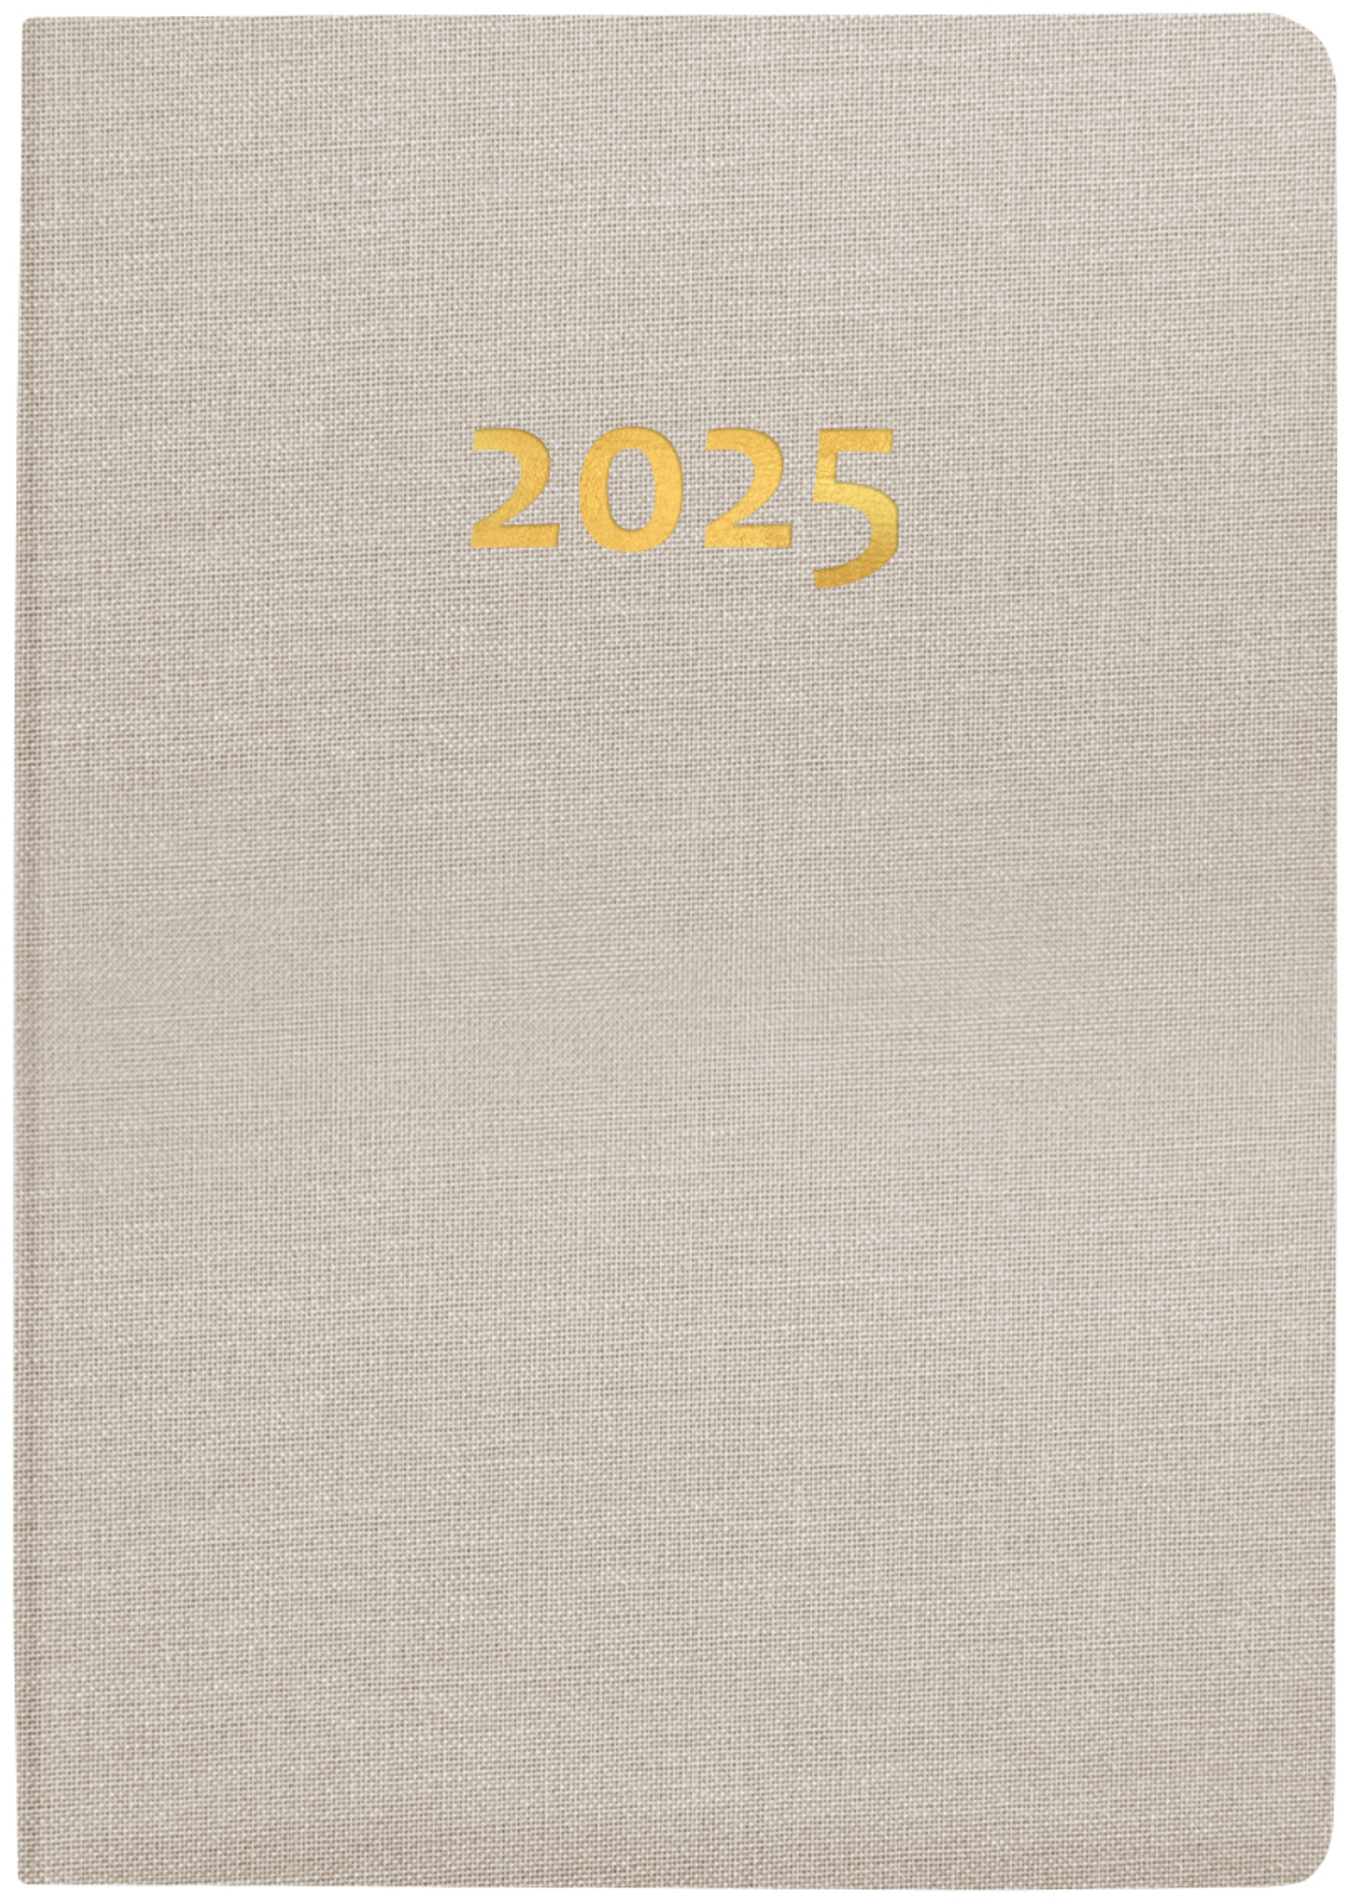 BIELLA Agenda Tell 2025 823201100025 2J/1P beige ML 8.5x12.5cm 2J/1P beige ML 8.5x12.5cm